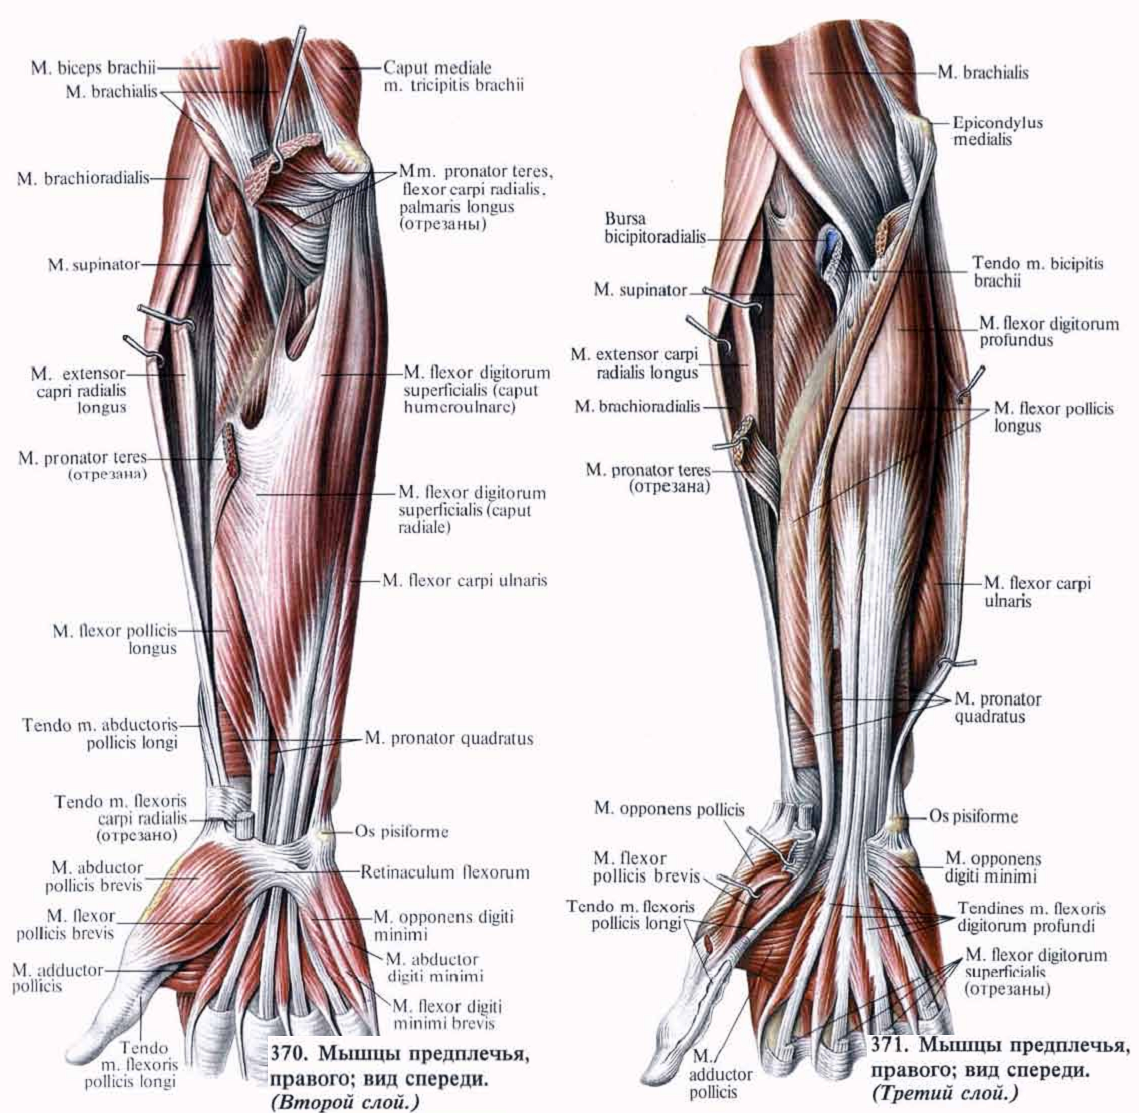 Мышцы предплечья (передняя группа) человека | анатомия мышц предплечья, строение, функции, картинки на eurolab